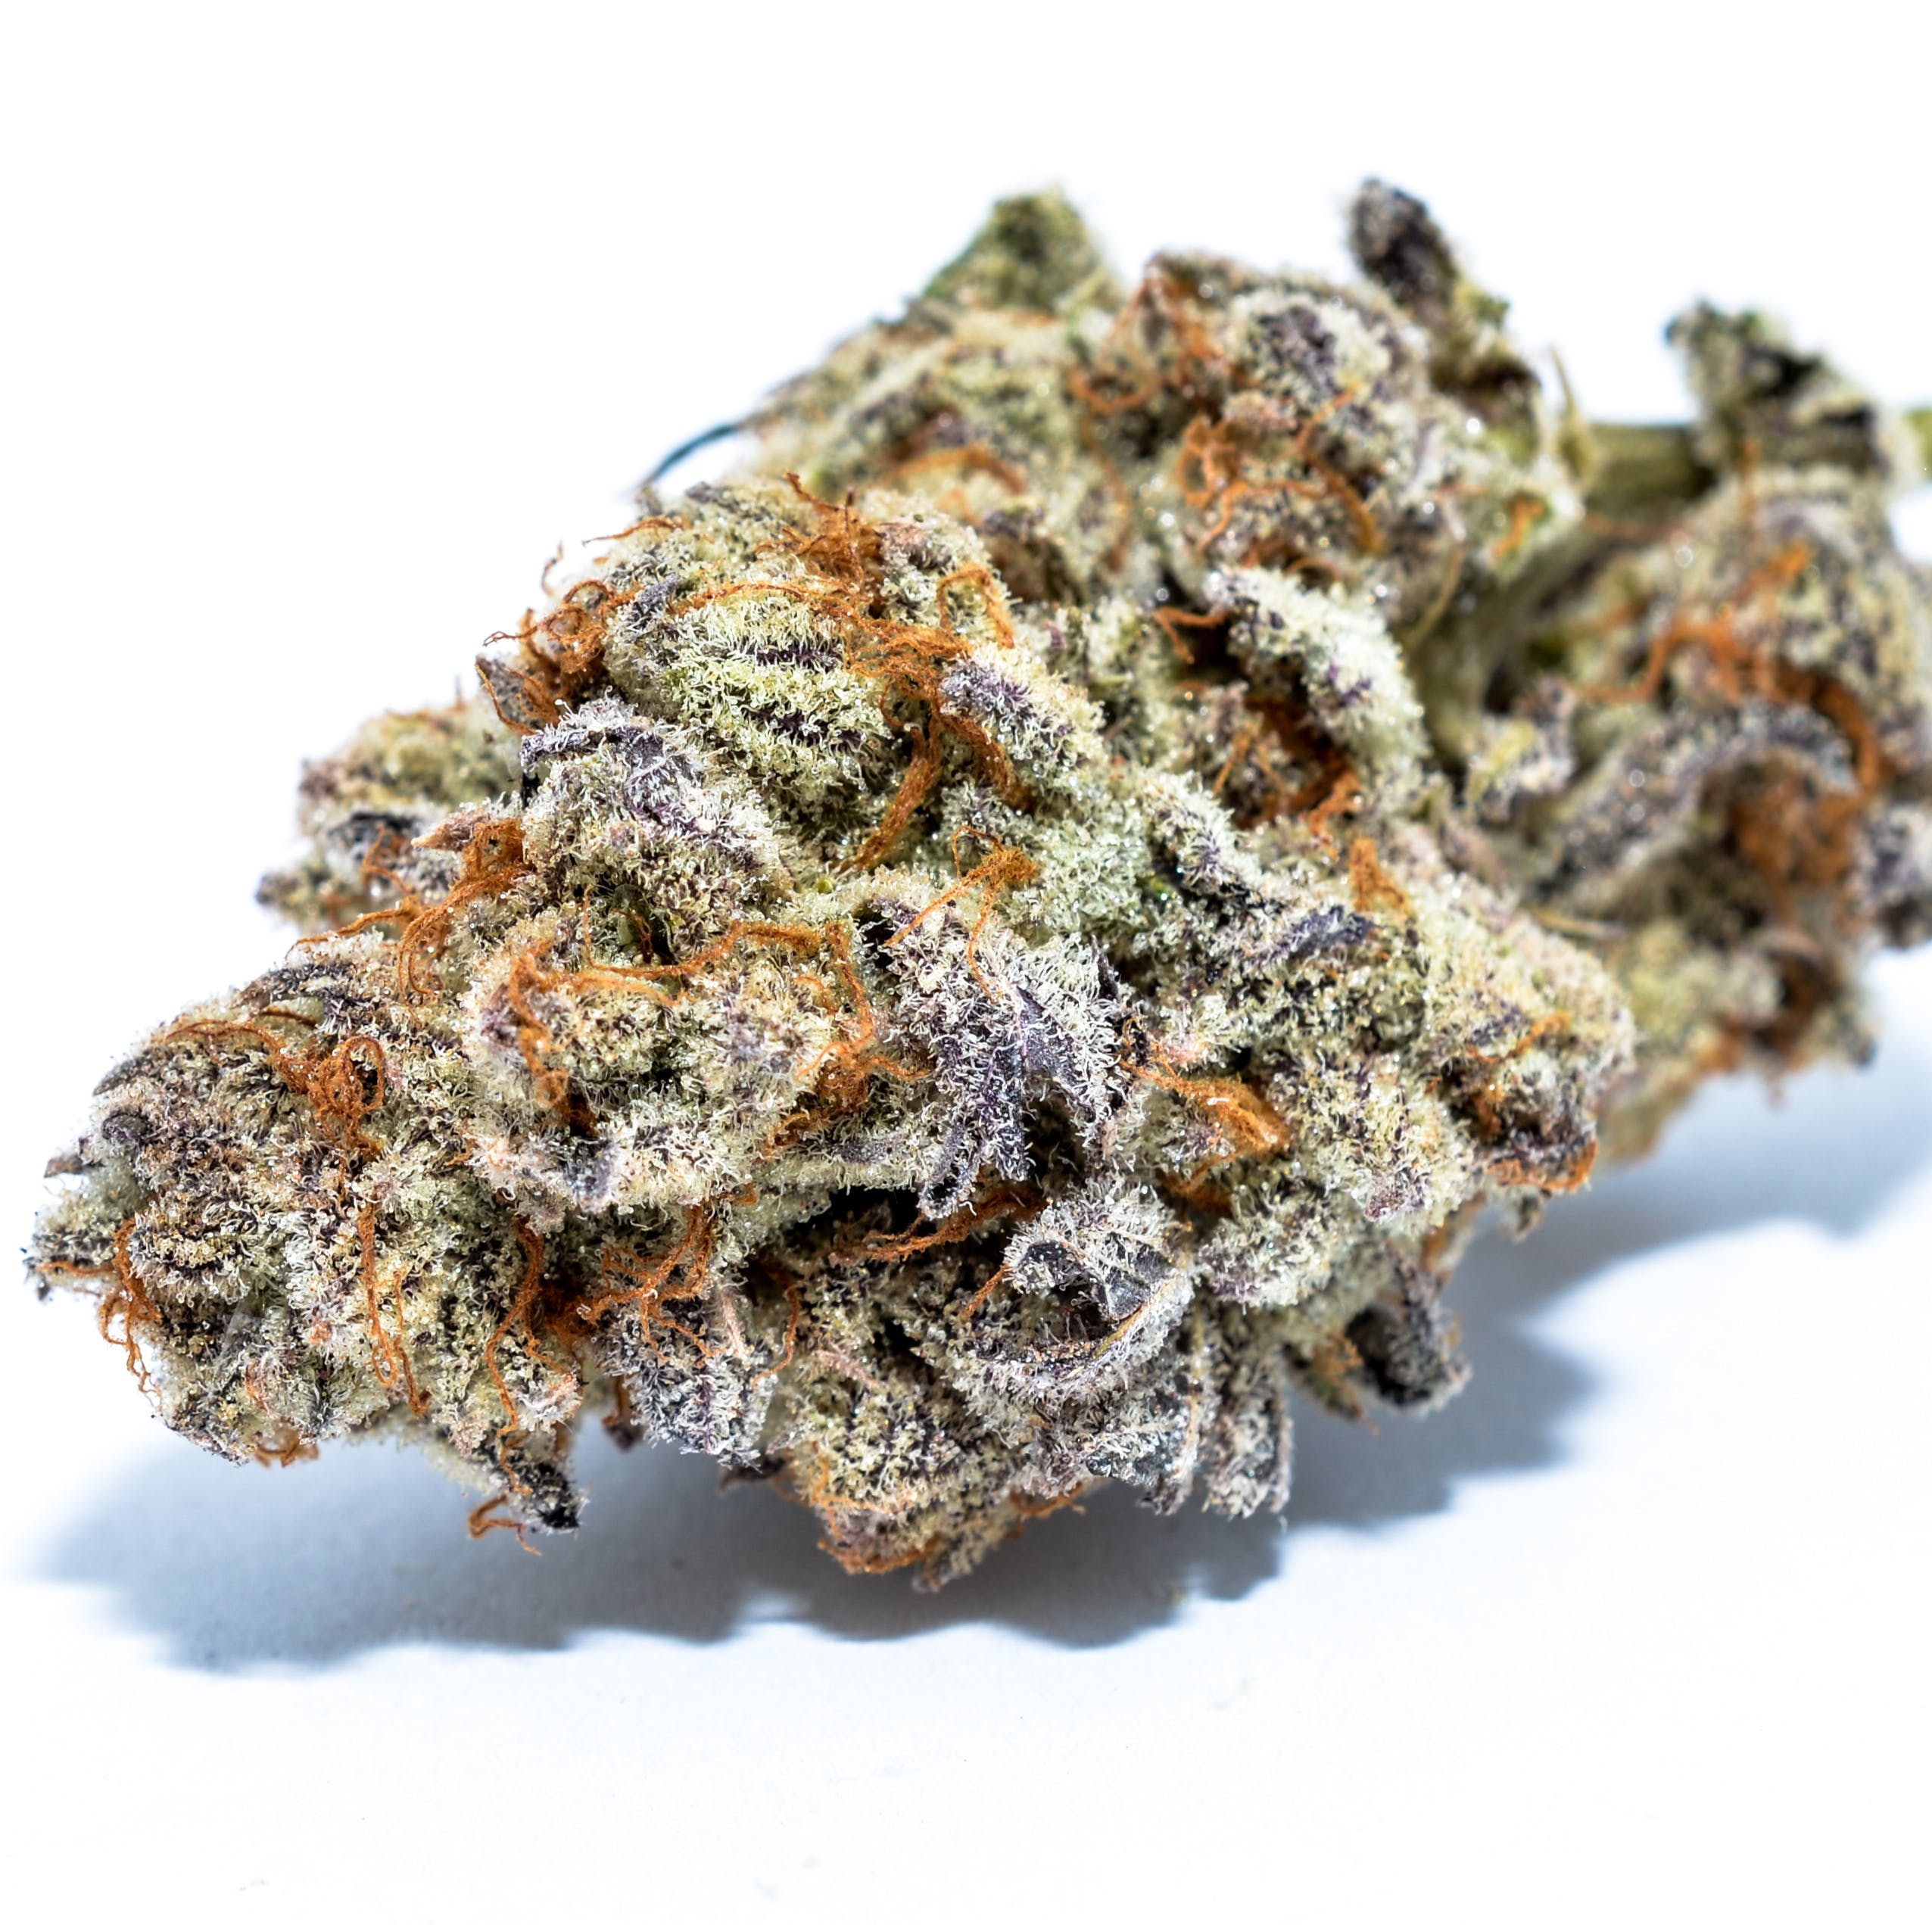 marijuana-dispensaries-city-compassionate-caregivers-ccc-in-los-angeles-thc-design-purple-punch